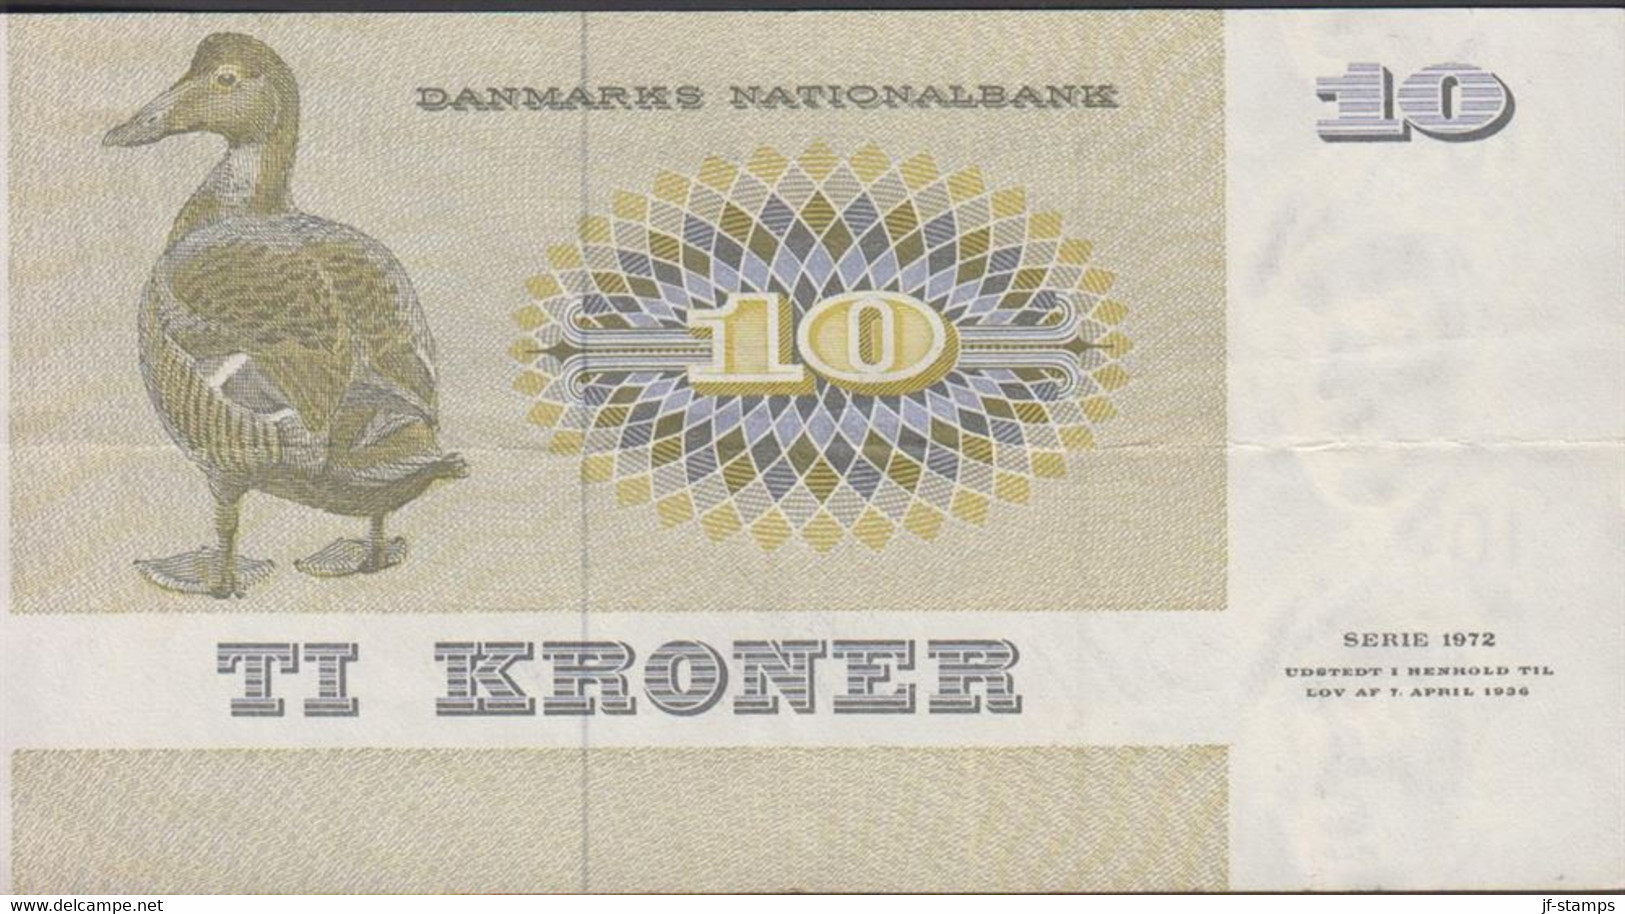 1972. DANMARK. DANMARKS NATIONALBANK 10 KRONER SERIE 1972. Fold.  - JF429806 - Denmark